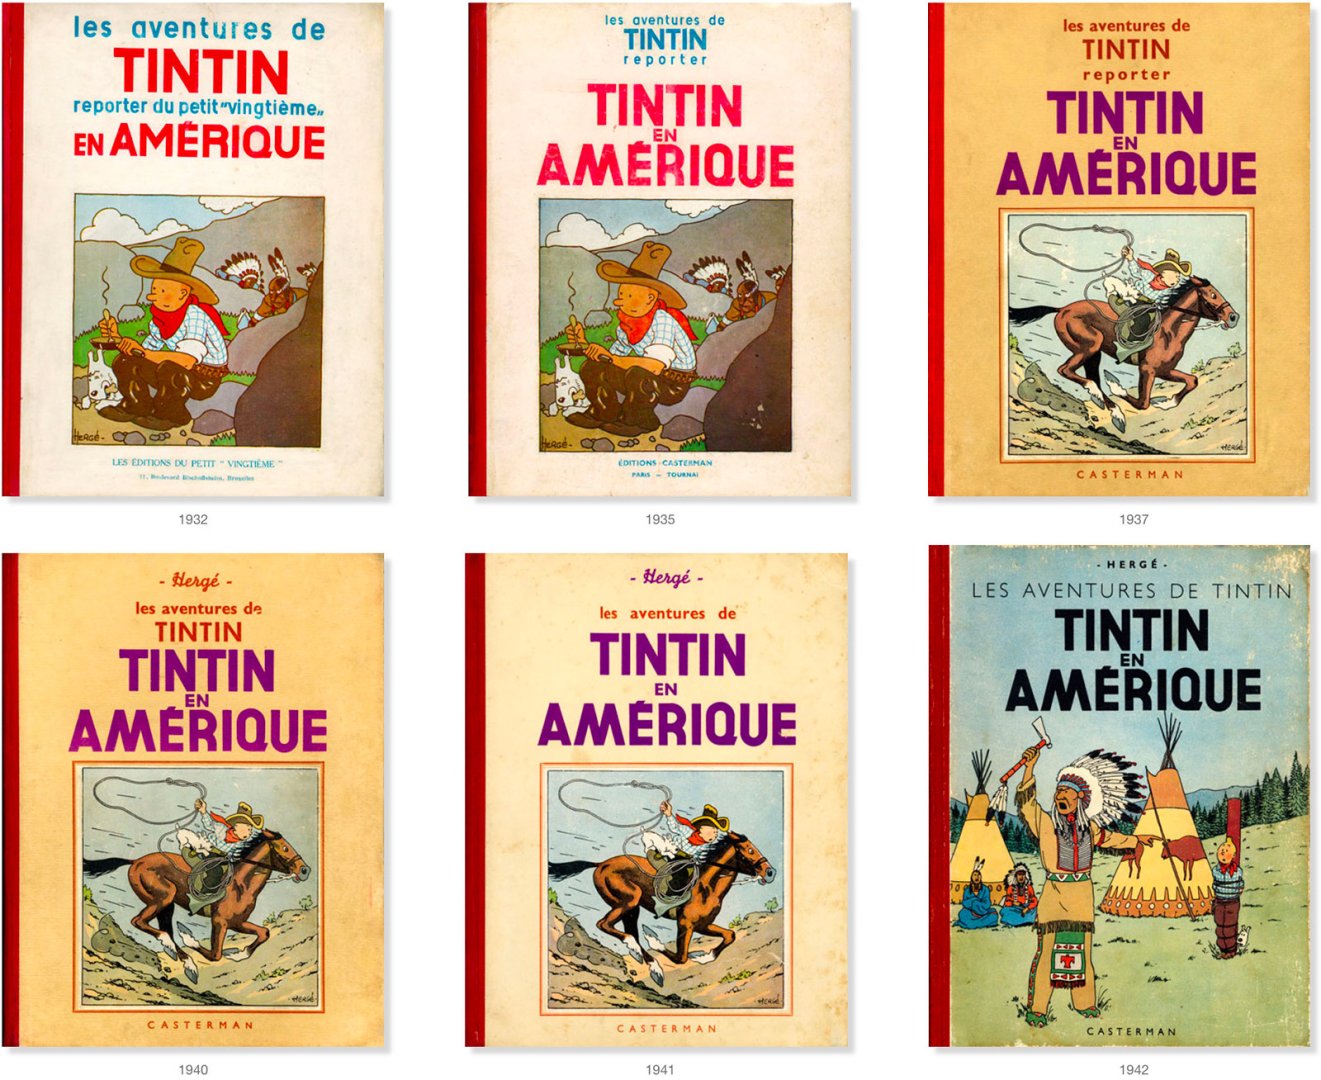 A Tintin Amerikában különböző francia nyelvű kiadásainak címlapjai